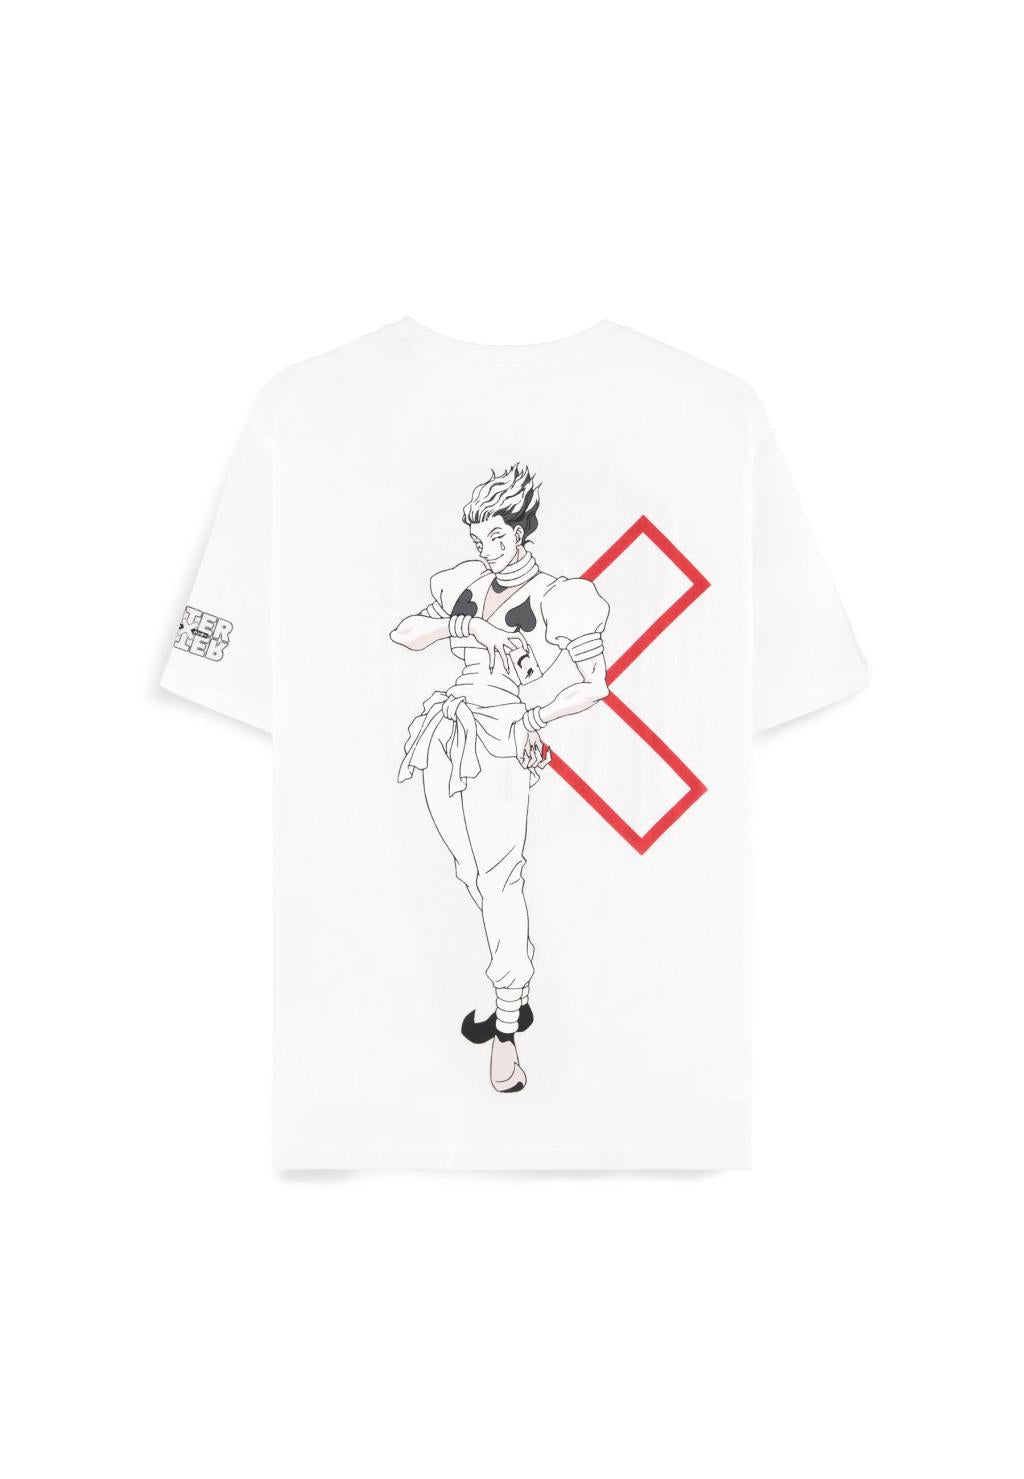 HUNTER X HUNTER - Hisoka - Damen T-Shirt (XXL)